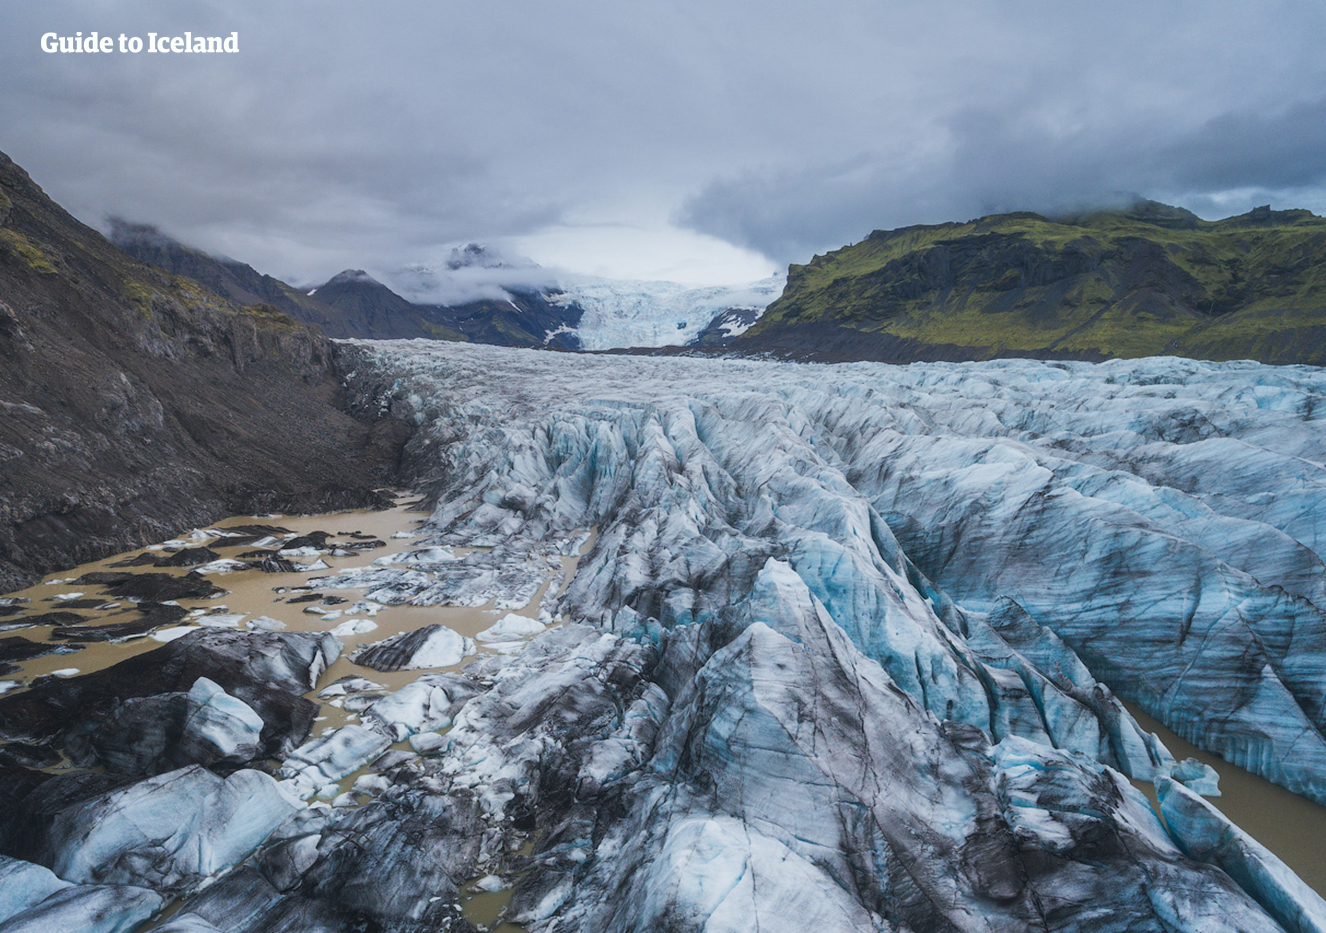 6일 여름 렌트카 여행 패키지 | 백야 기간에 돌아보는 아이슬란드의 숨겨진 보석들